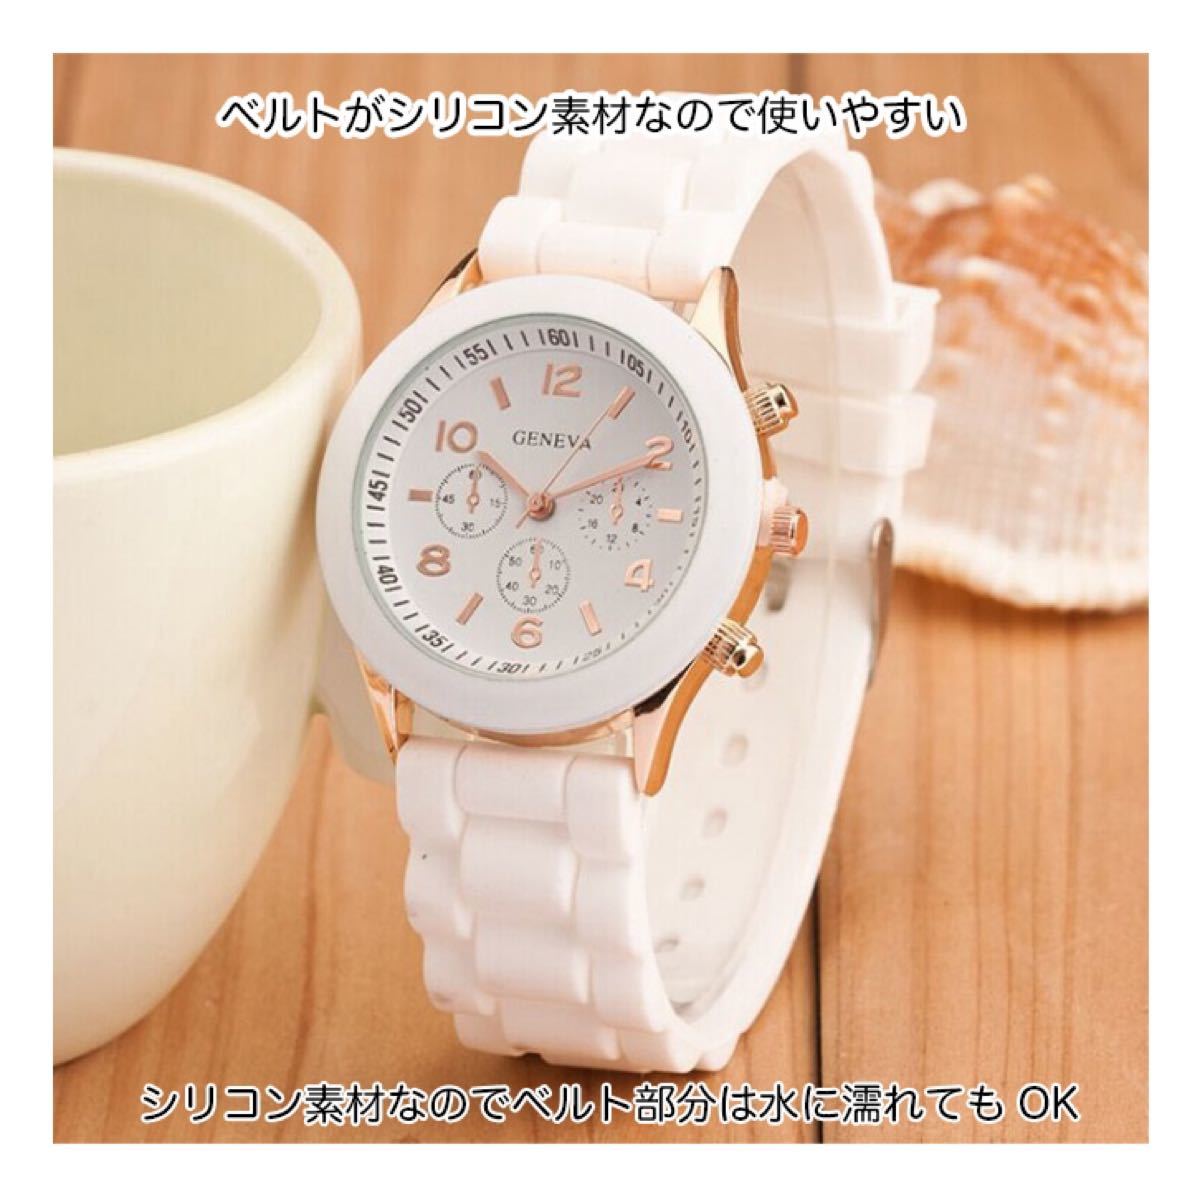 で税込み送料無料 シリコンウォッチ 腕時計 うで時計 Watch 白 ホワイト お洒落 可愛い 合わせやすい カジュアル シンプル プレゼント フォルテ送料無料 ファッション 腕時計 アクセサリー Ekumudini Com